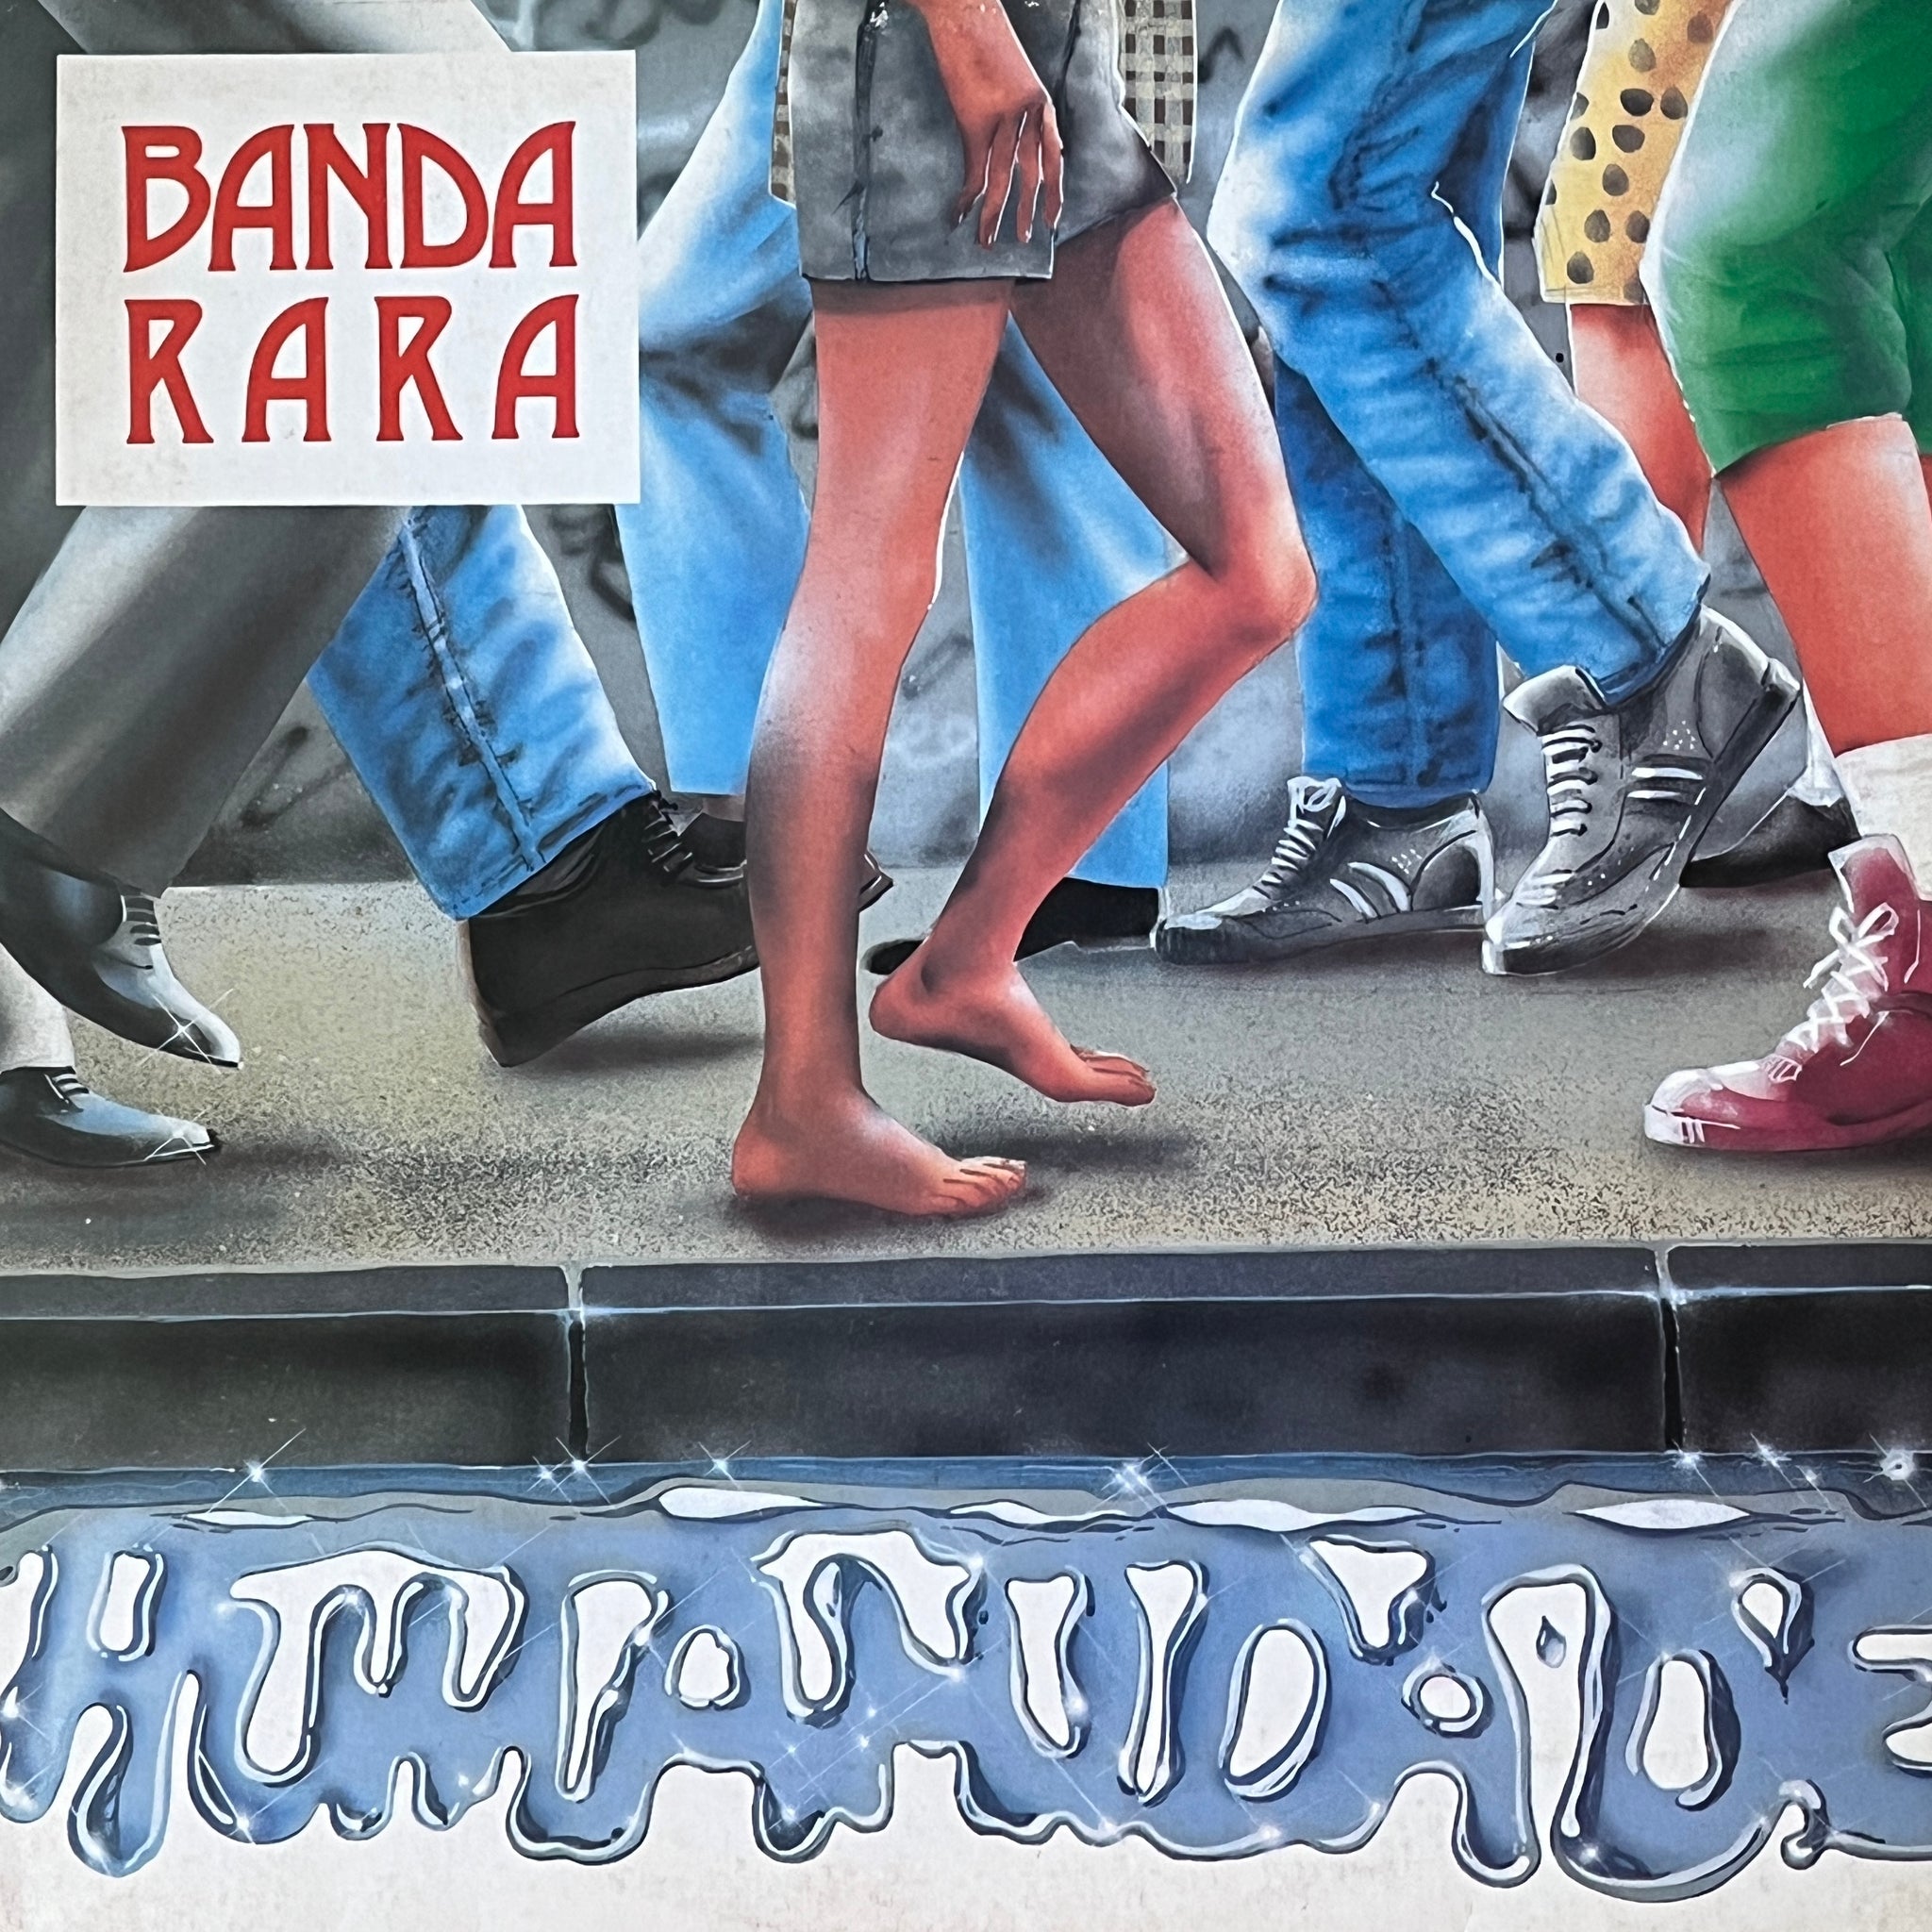 Banda Rara – Humanidade